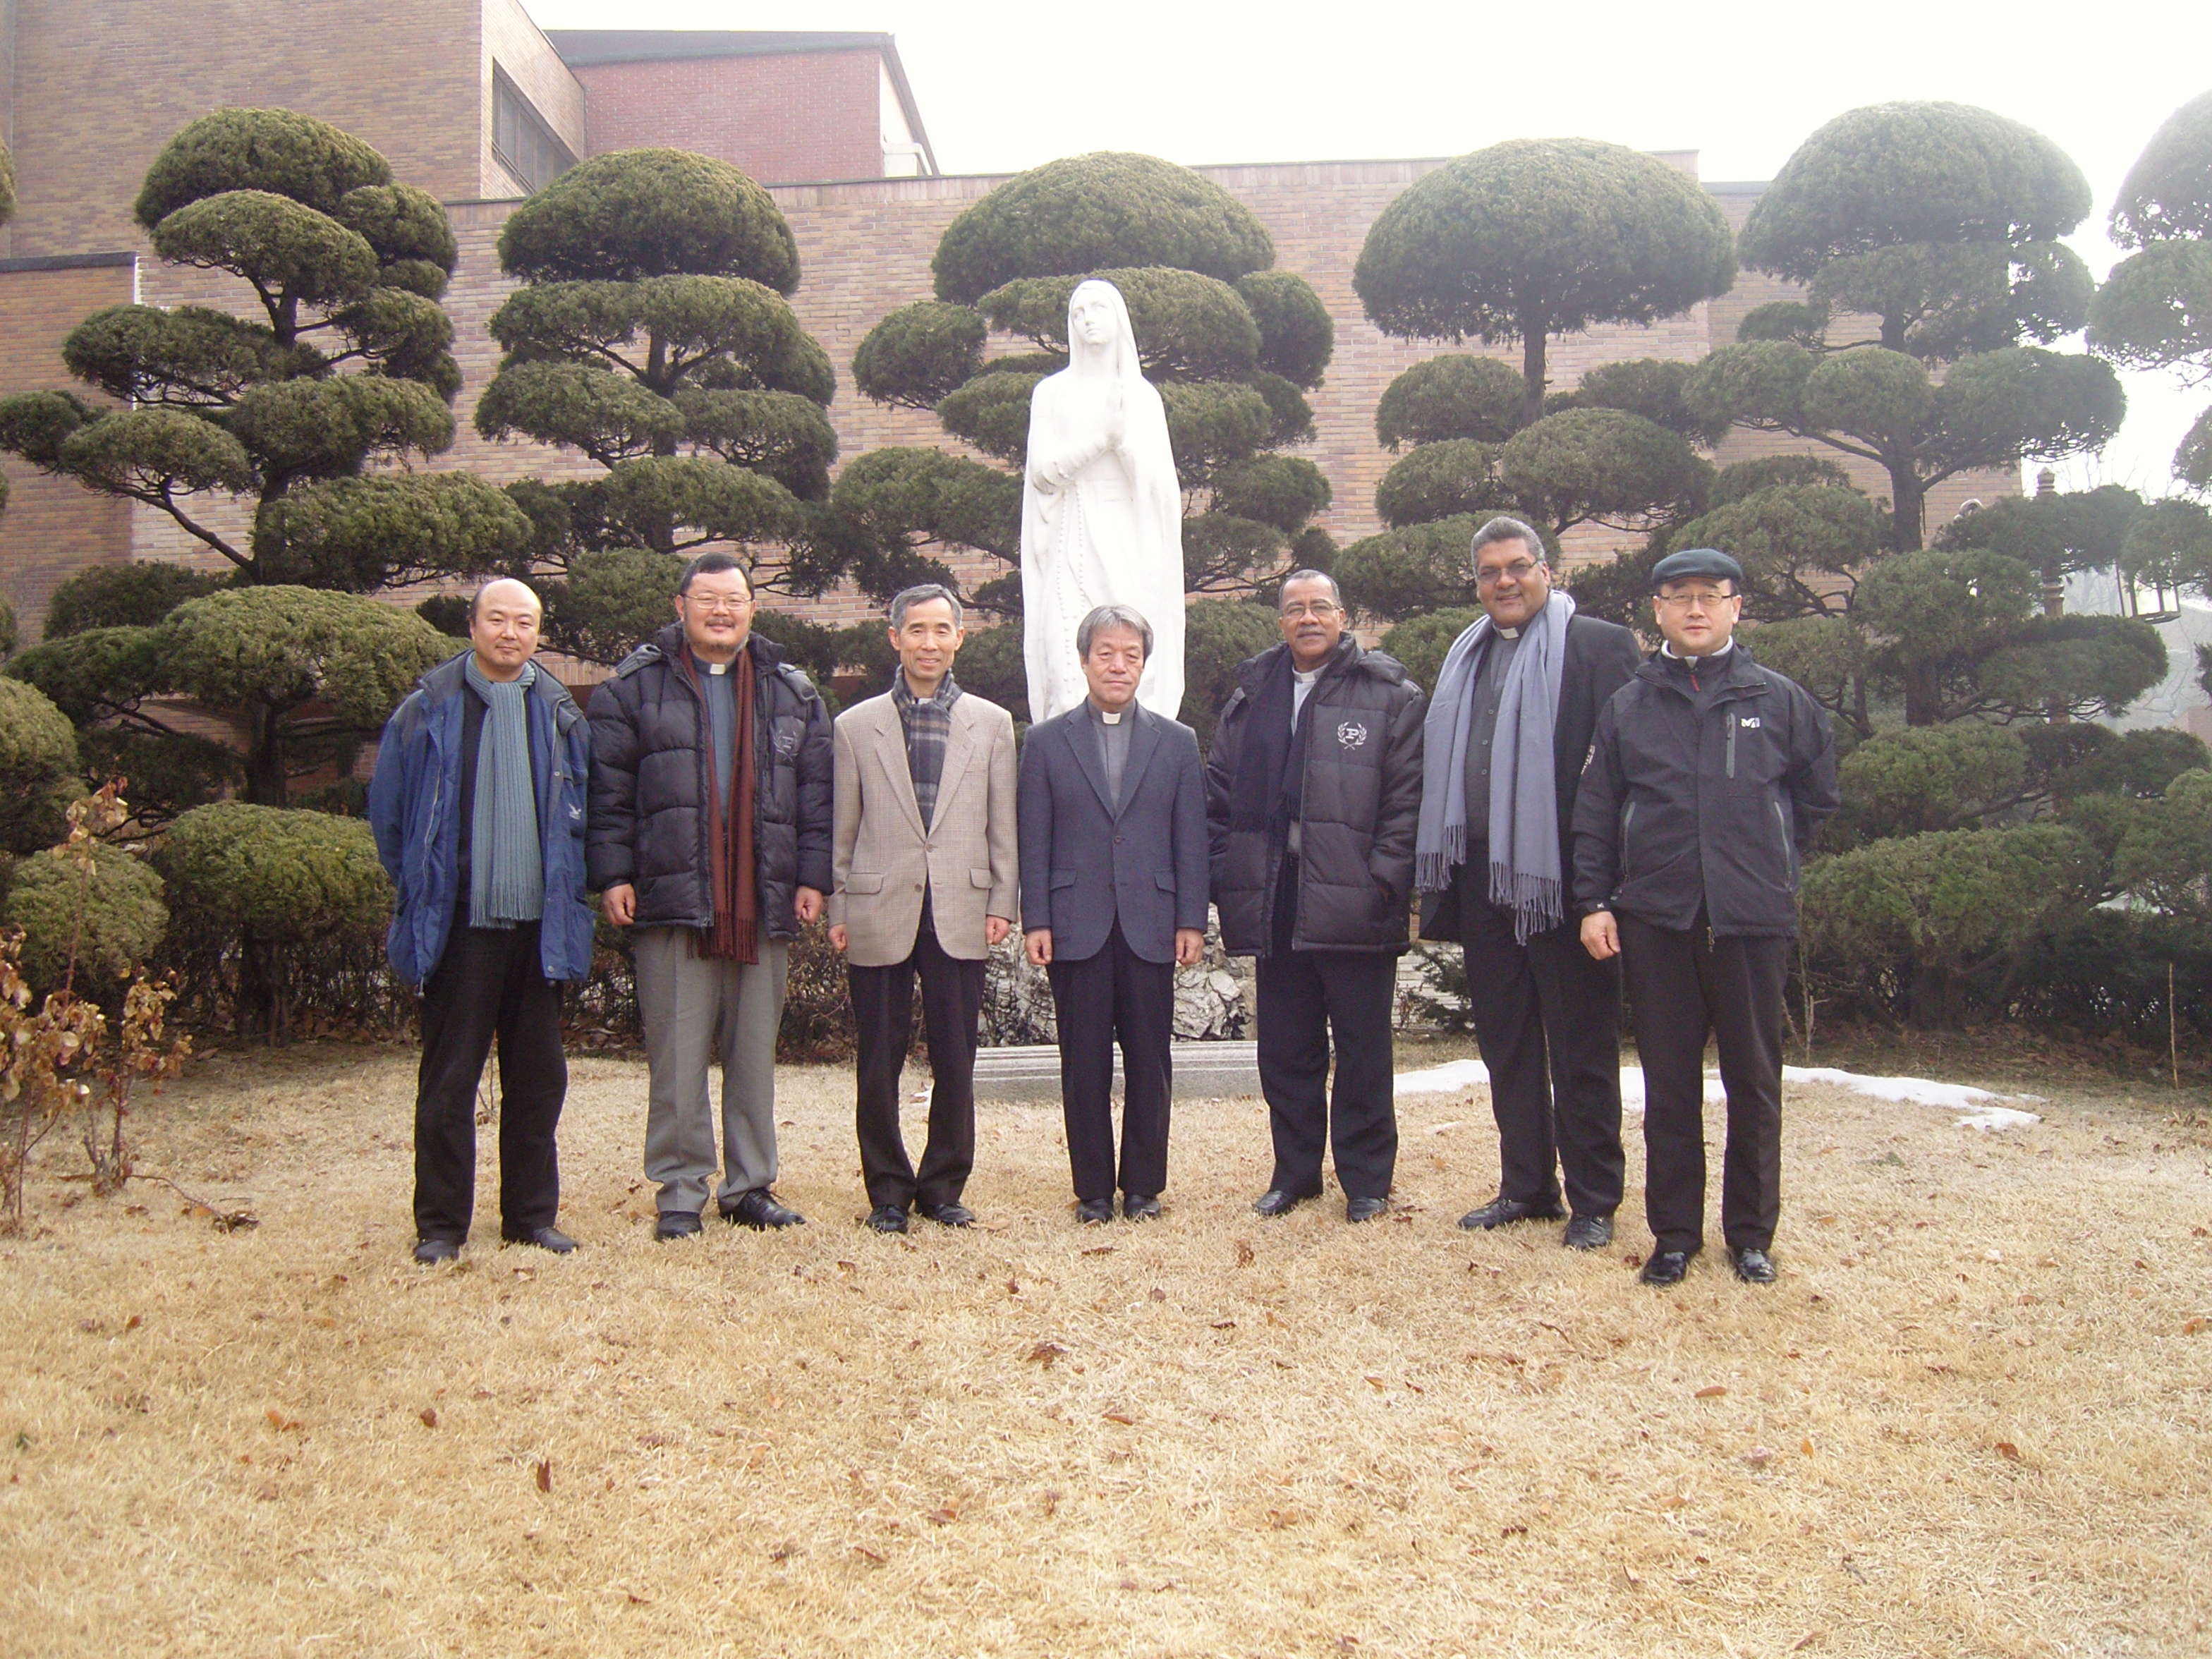 파나마 대주교 방문(2011.2.7)의 관련된 이미지 입니다.